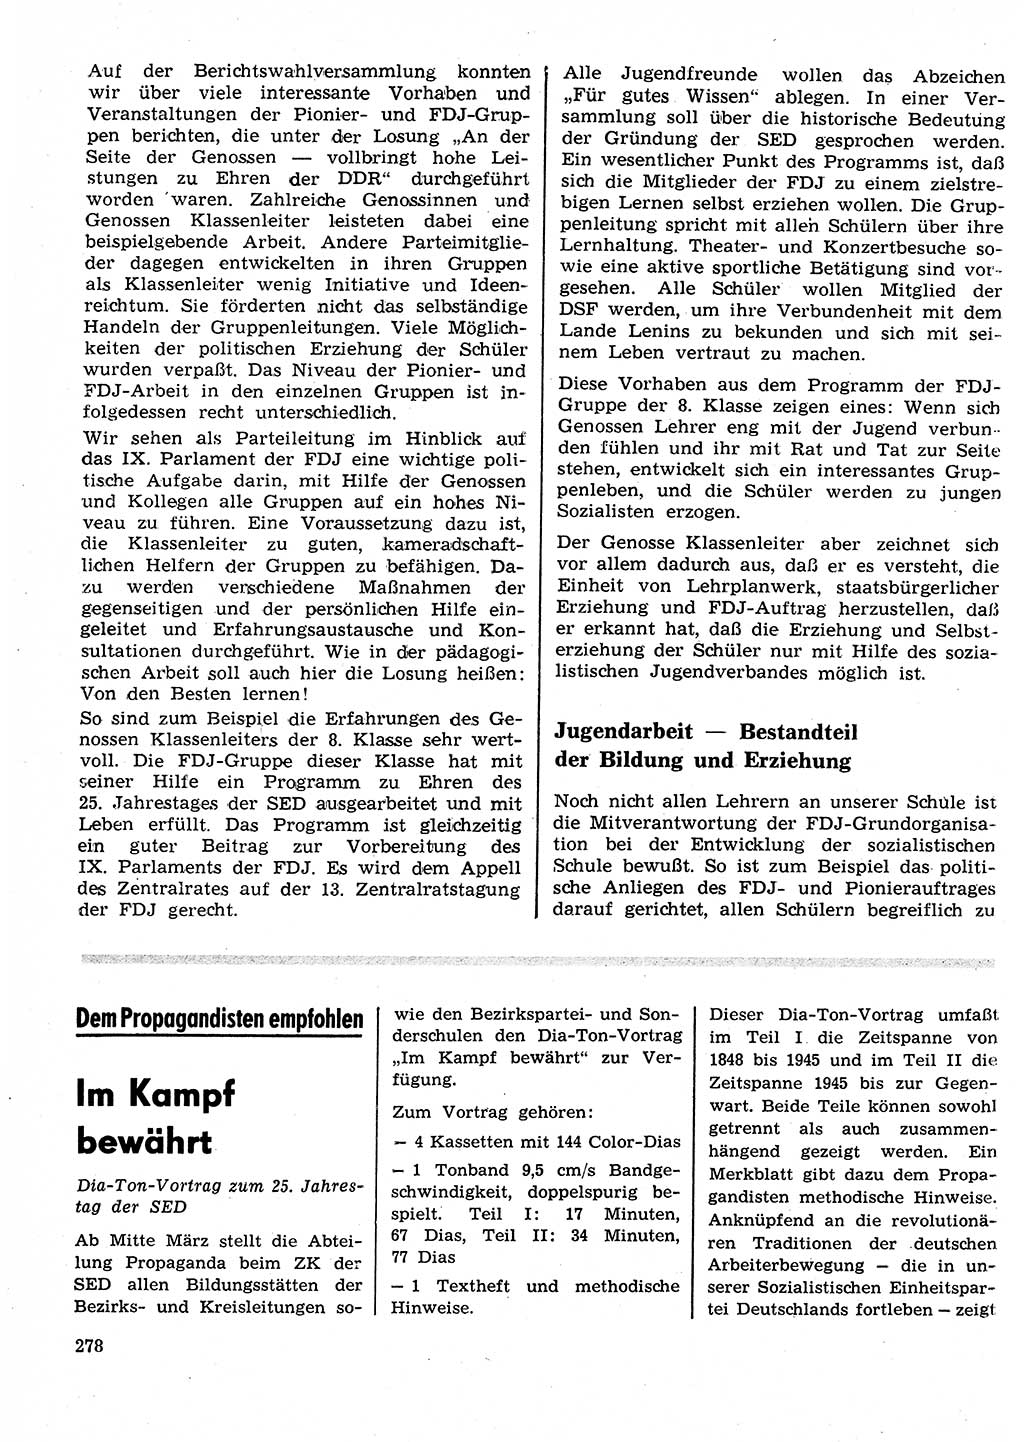 Neuer Weg (NW), Organ des Zentralkomitees (ZK) der SED (Sozialistische Einheitspartei Deutschlands) für Fragen des Parteilebens, 26. Jahrgang [Deutsche Demokratische Republik (DDR)] 1971, Seite 278 (NW ZK SED DDR 1971, S. 278)